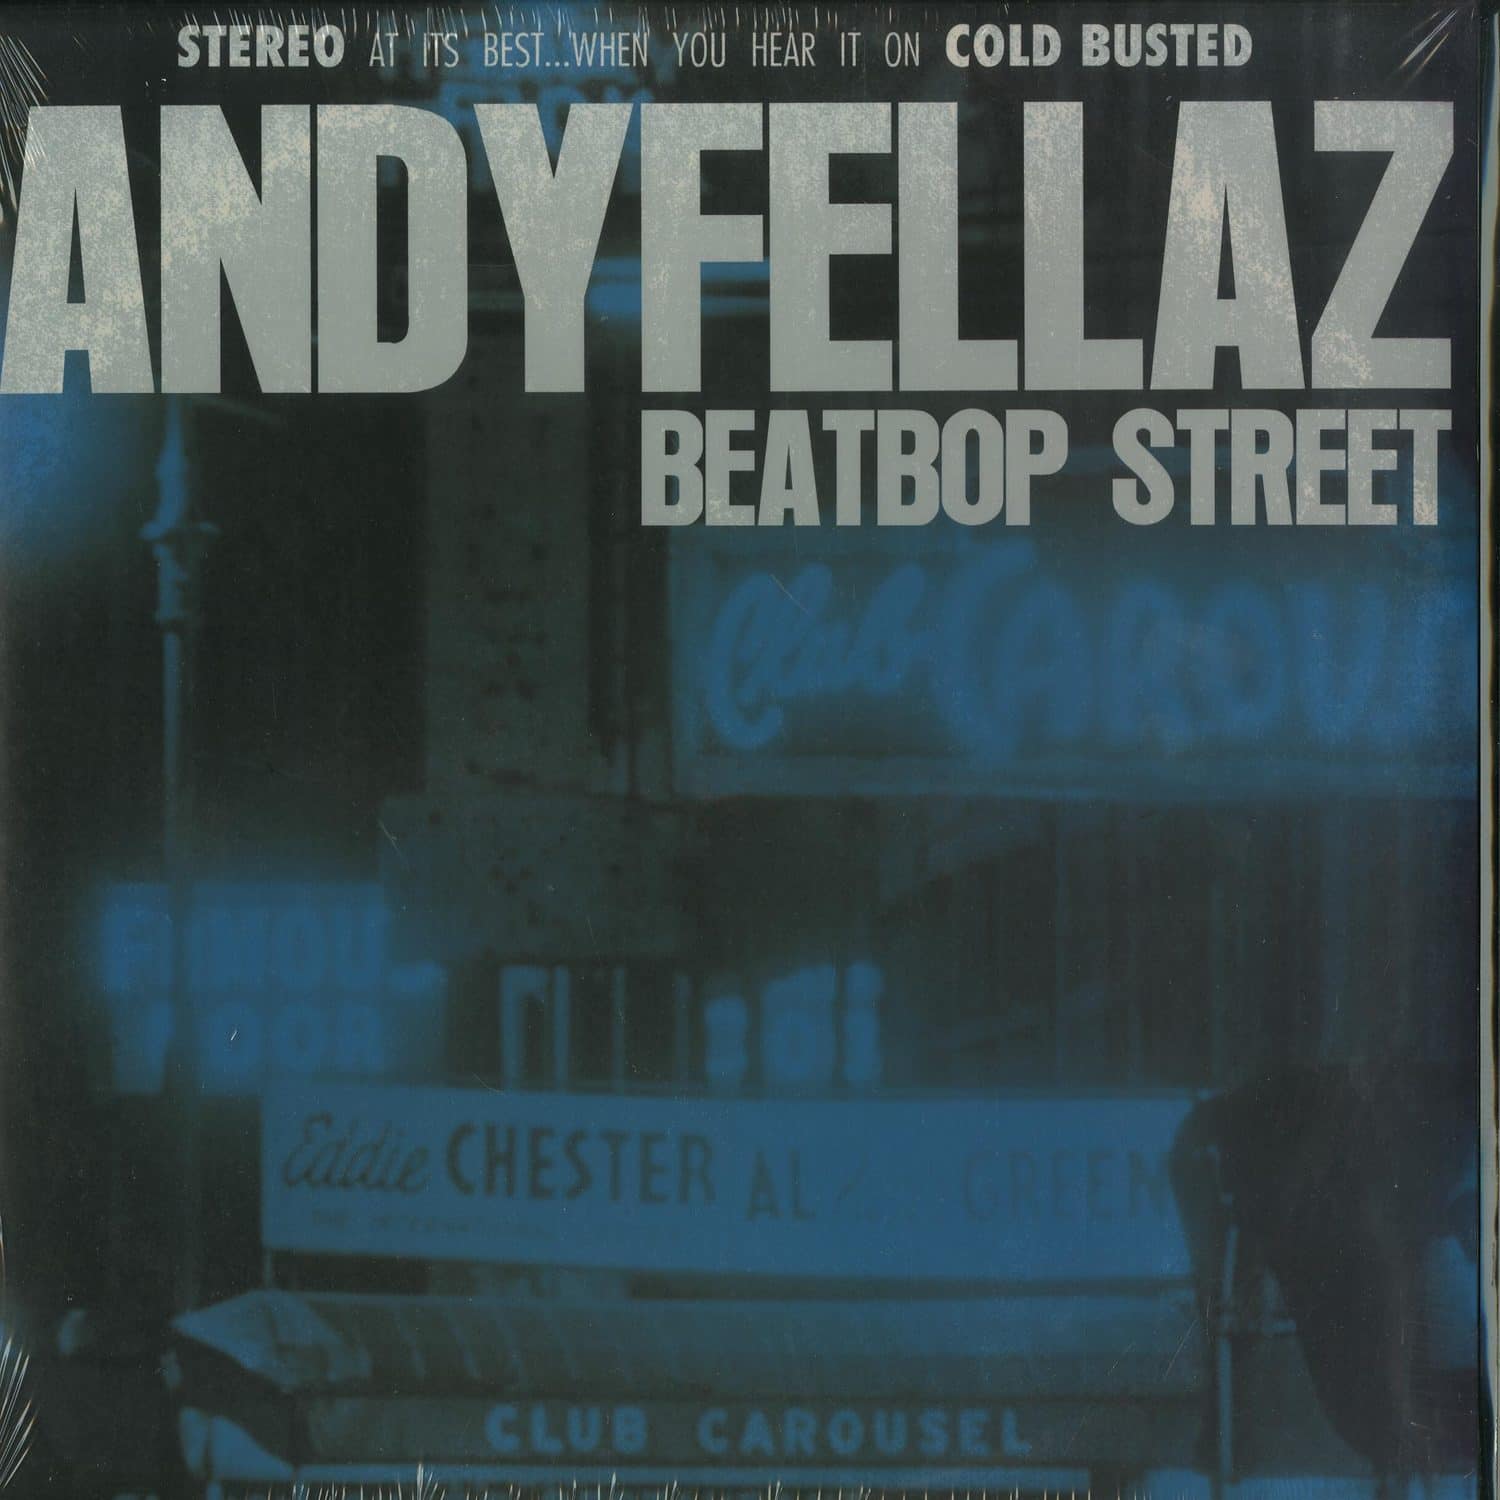 Andy Fellaz - BEATBOP STREET 